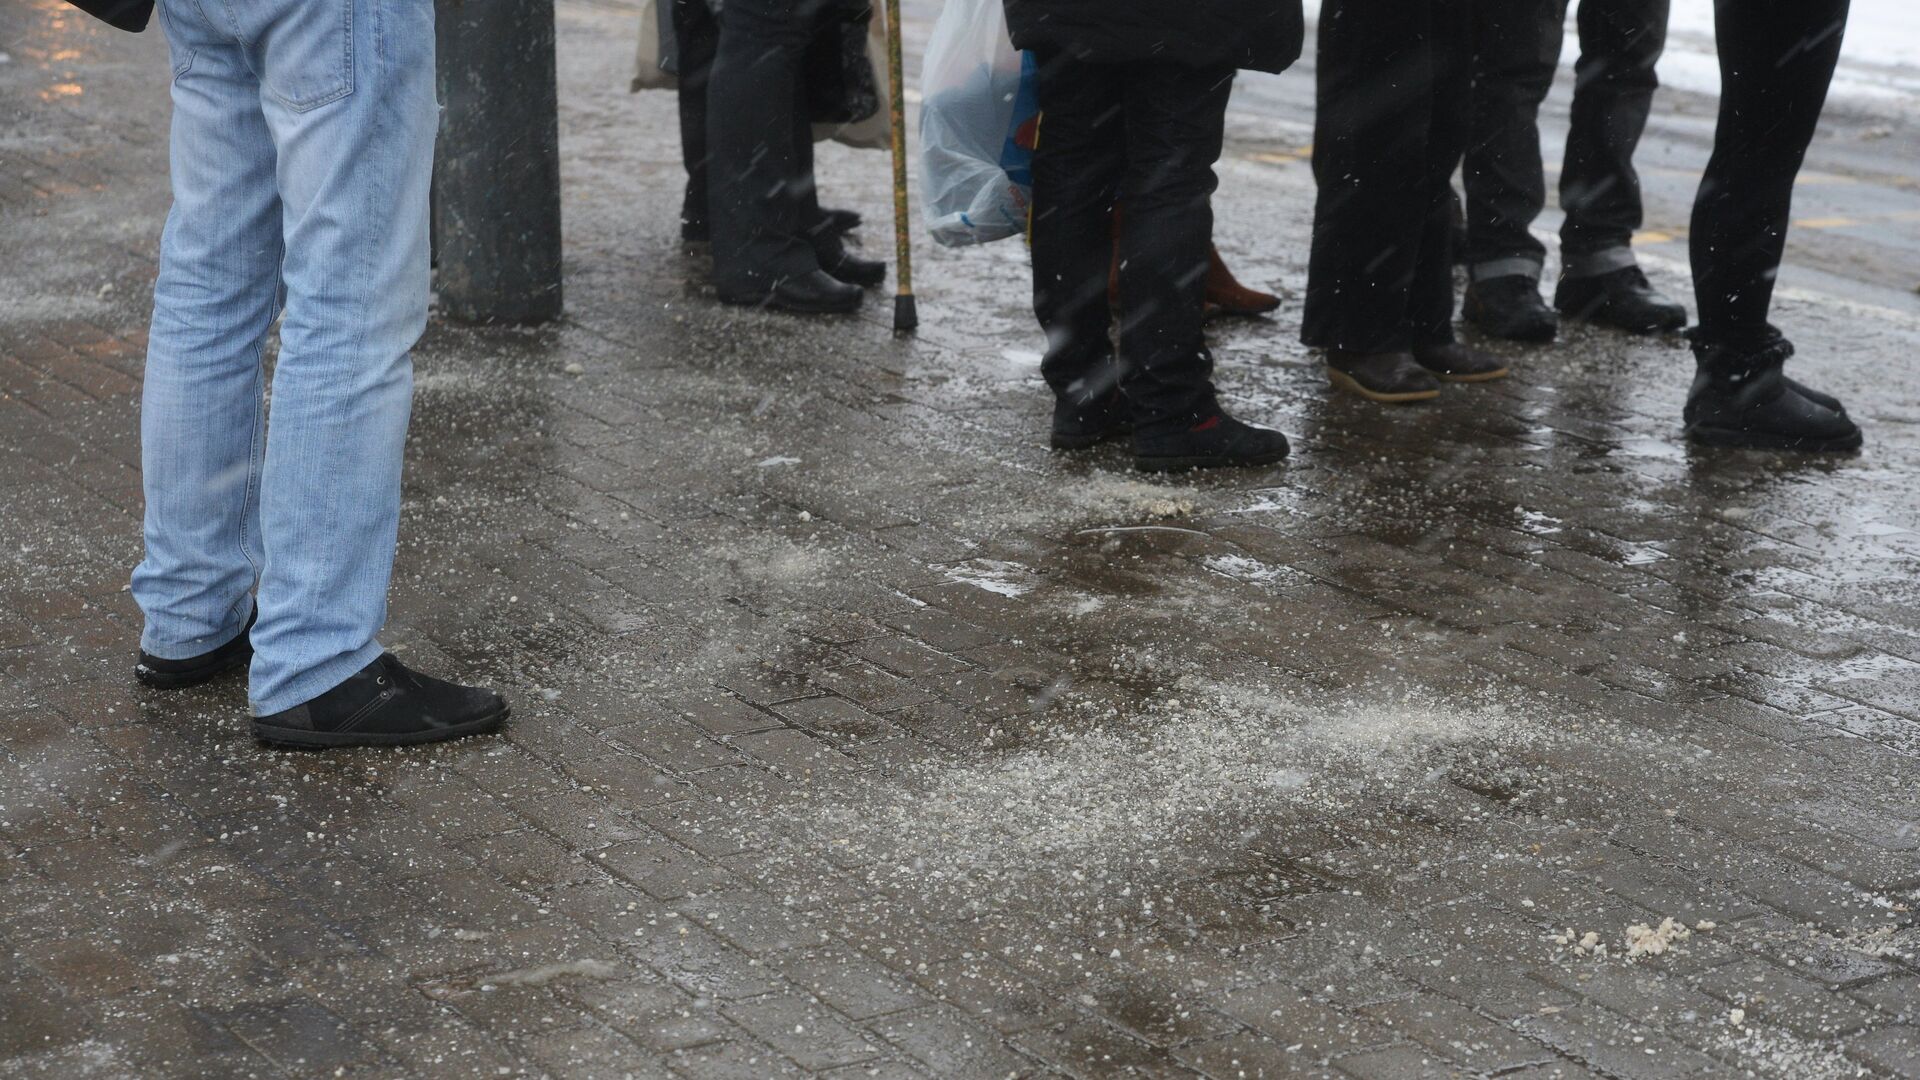 Тротуар, посыпанный противогололедным реагентом, в Москве. Архивное фото - РИА Новости, 1920, 04.02.2016